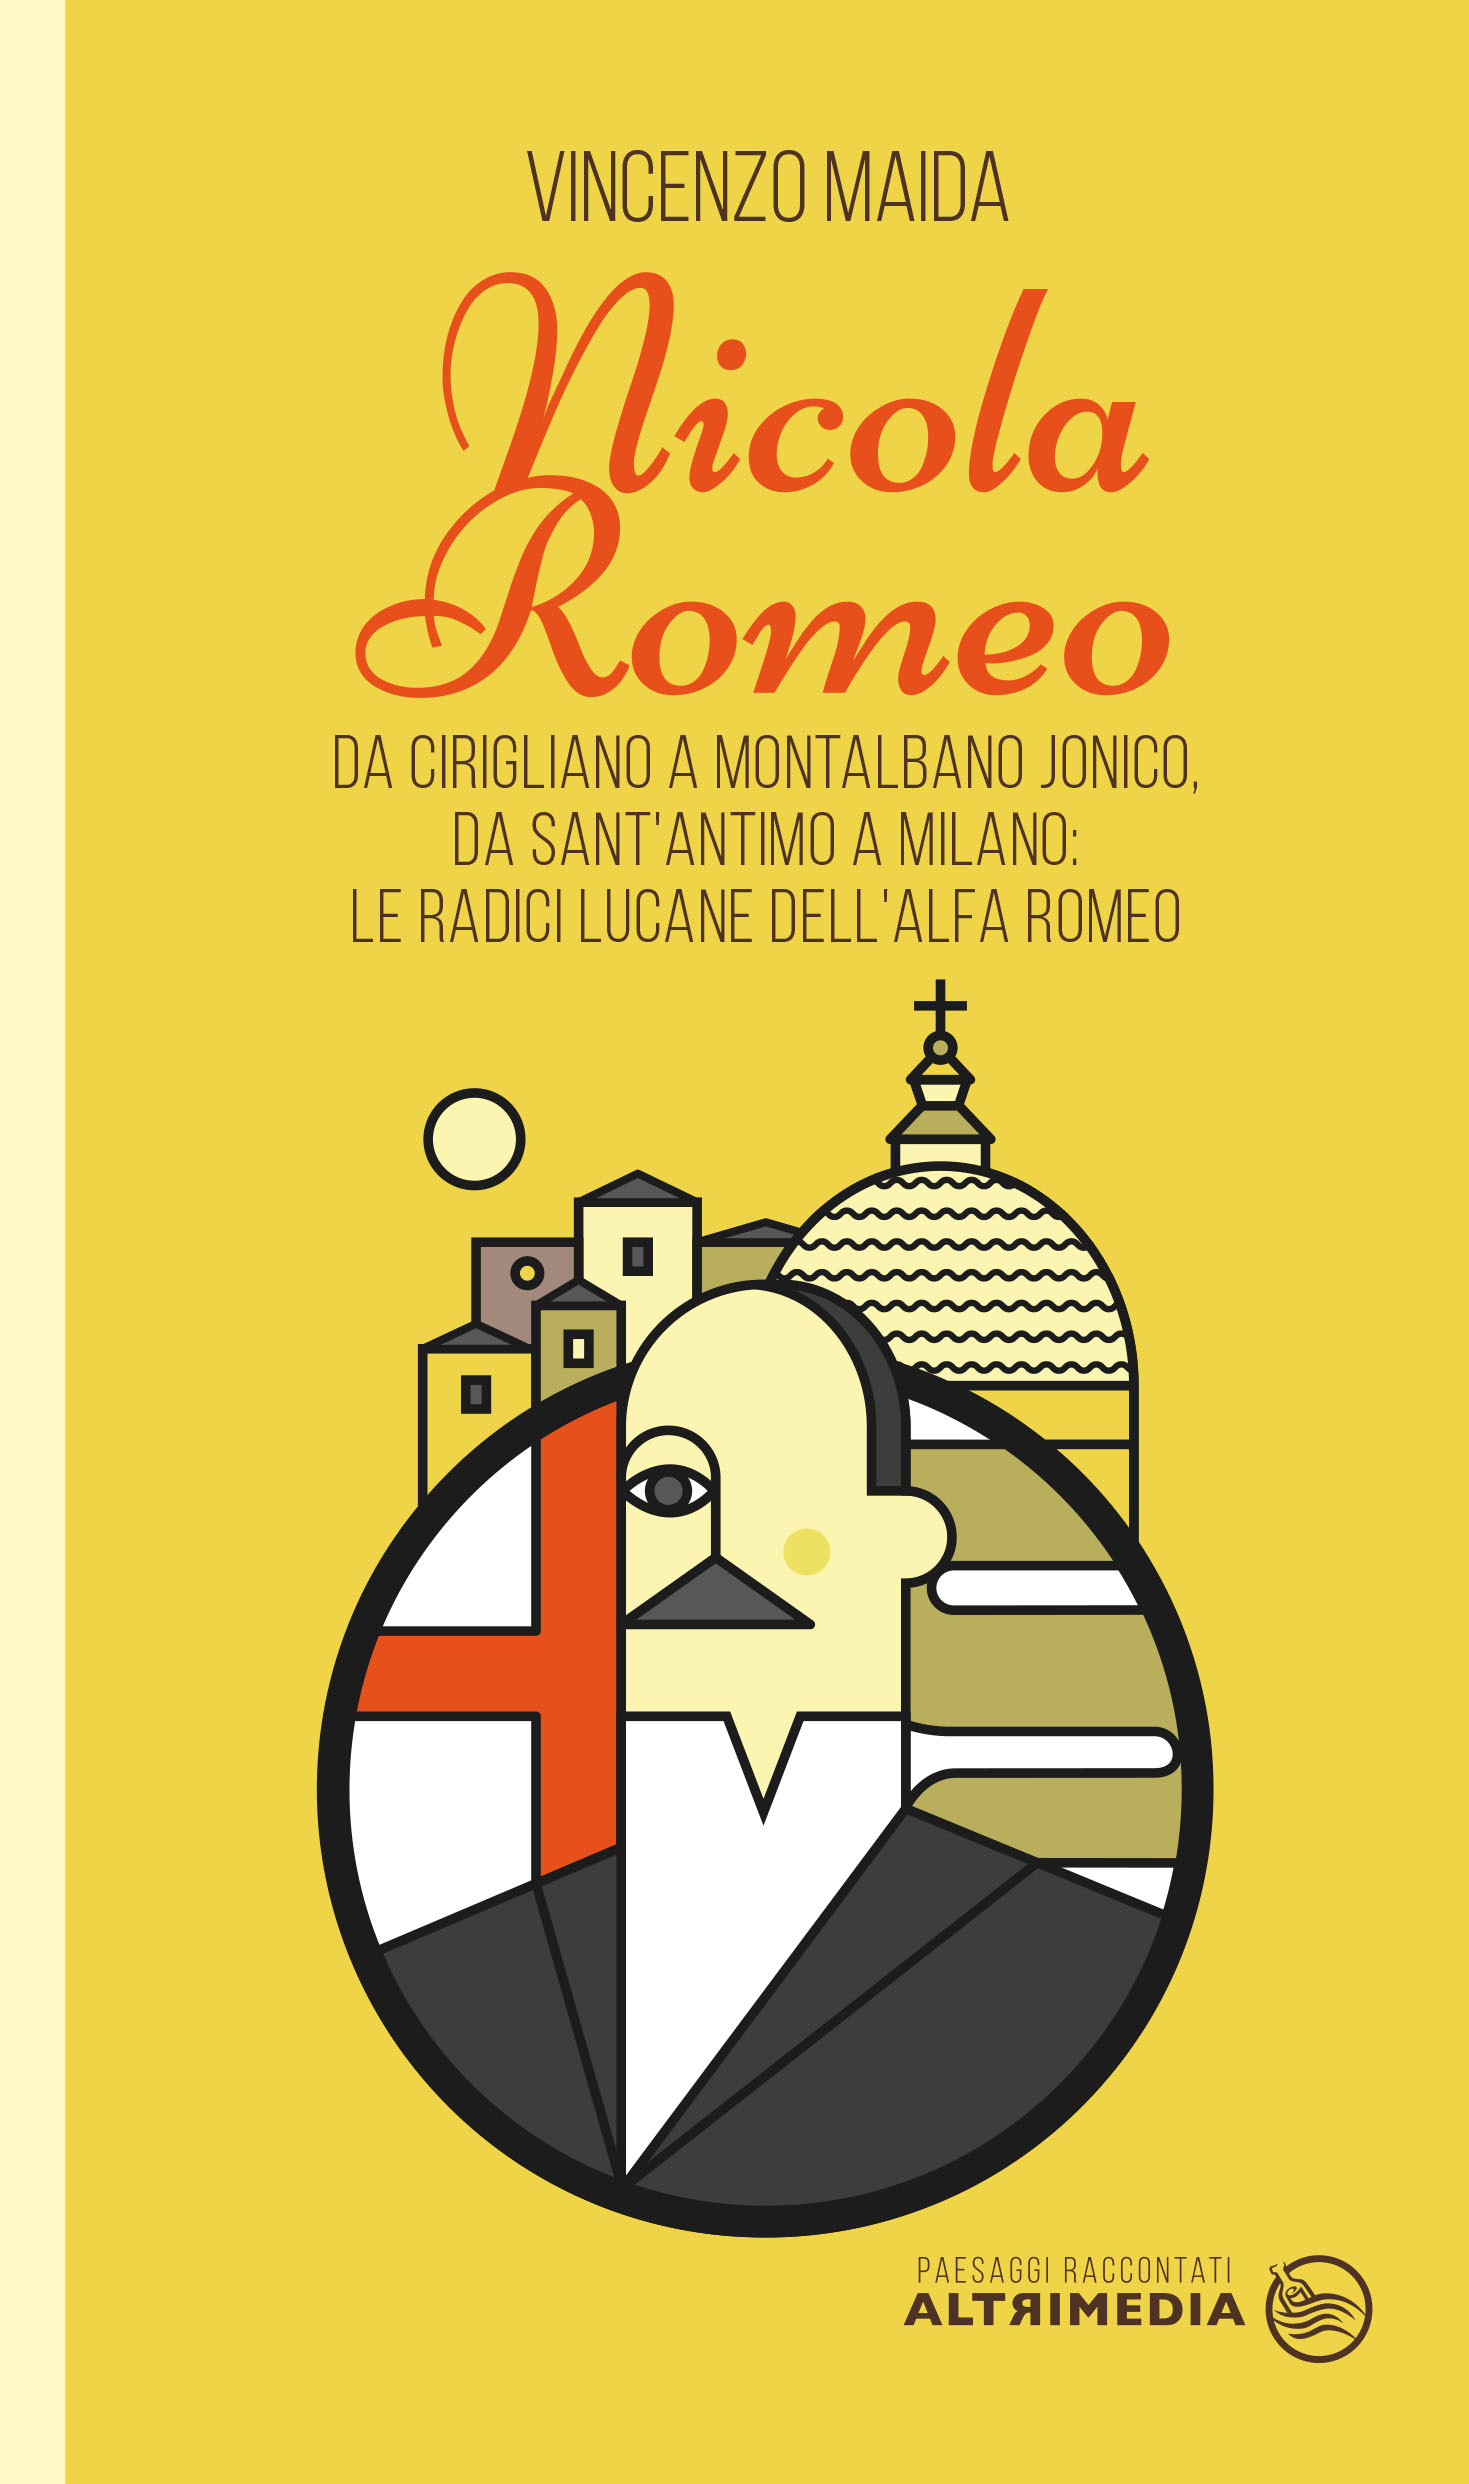 Cirigliano, domani la presentazione del libro di Vincenzo Maida “Nicola Romeo”